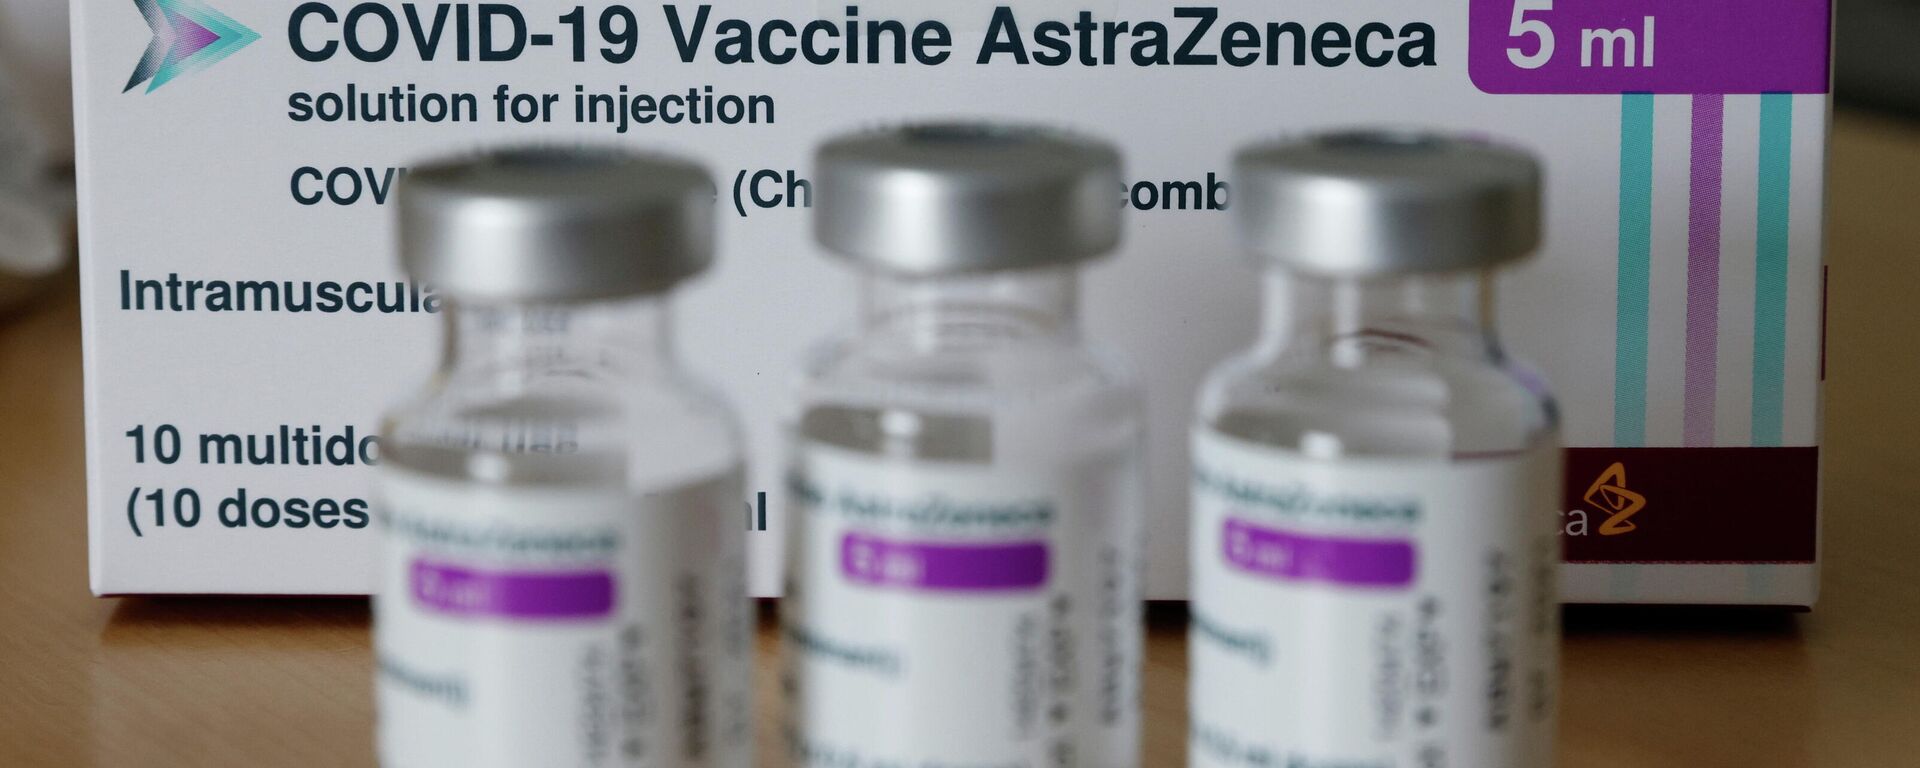 Vacuna contra el COVID-19 del laboratorio AstraZeneca - Sputnik Mundo, 1920, 04.05.2021